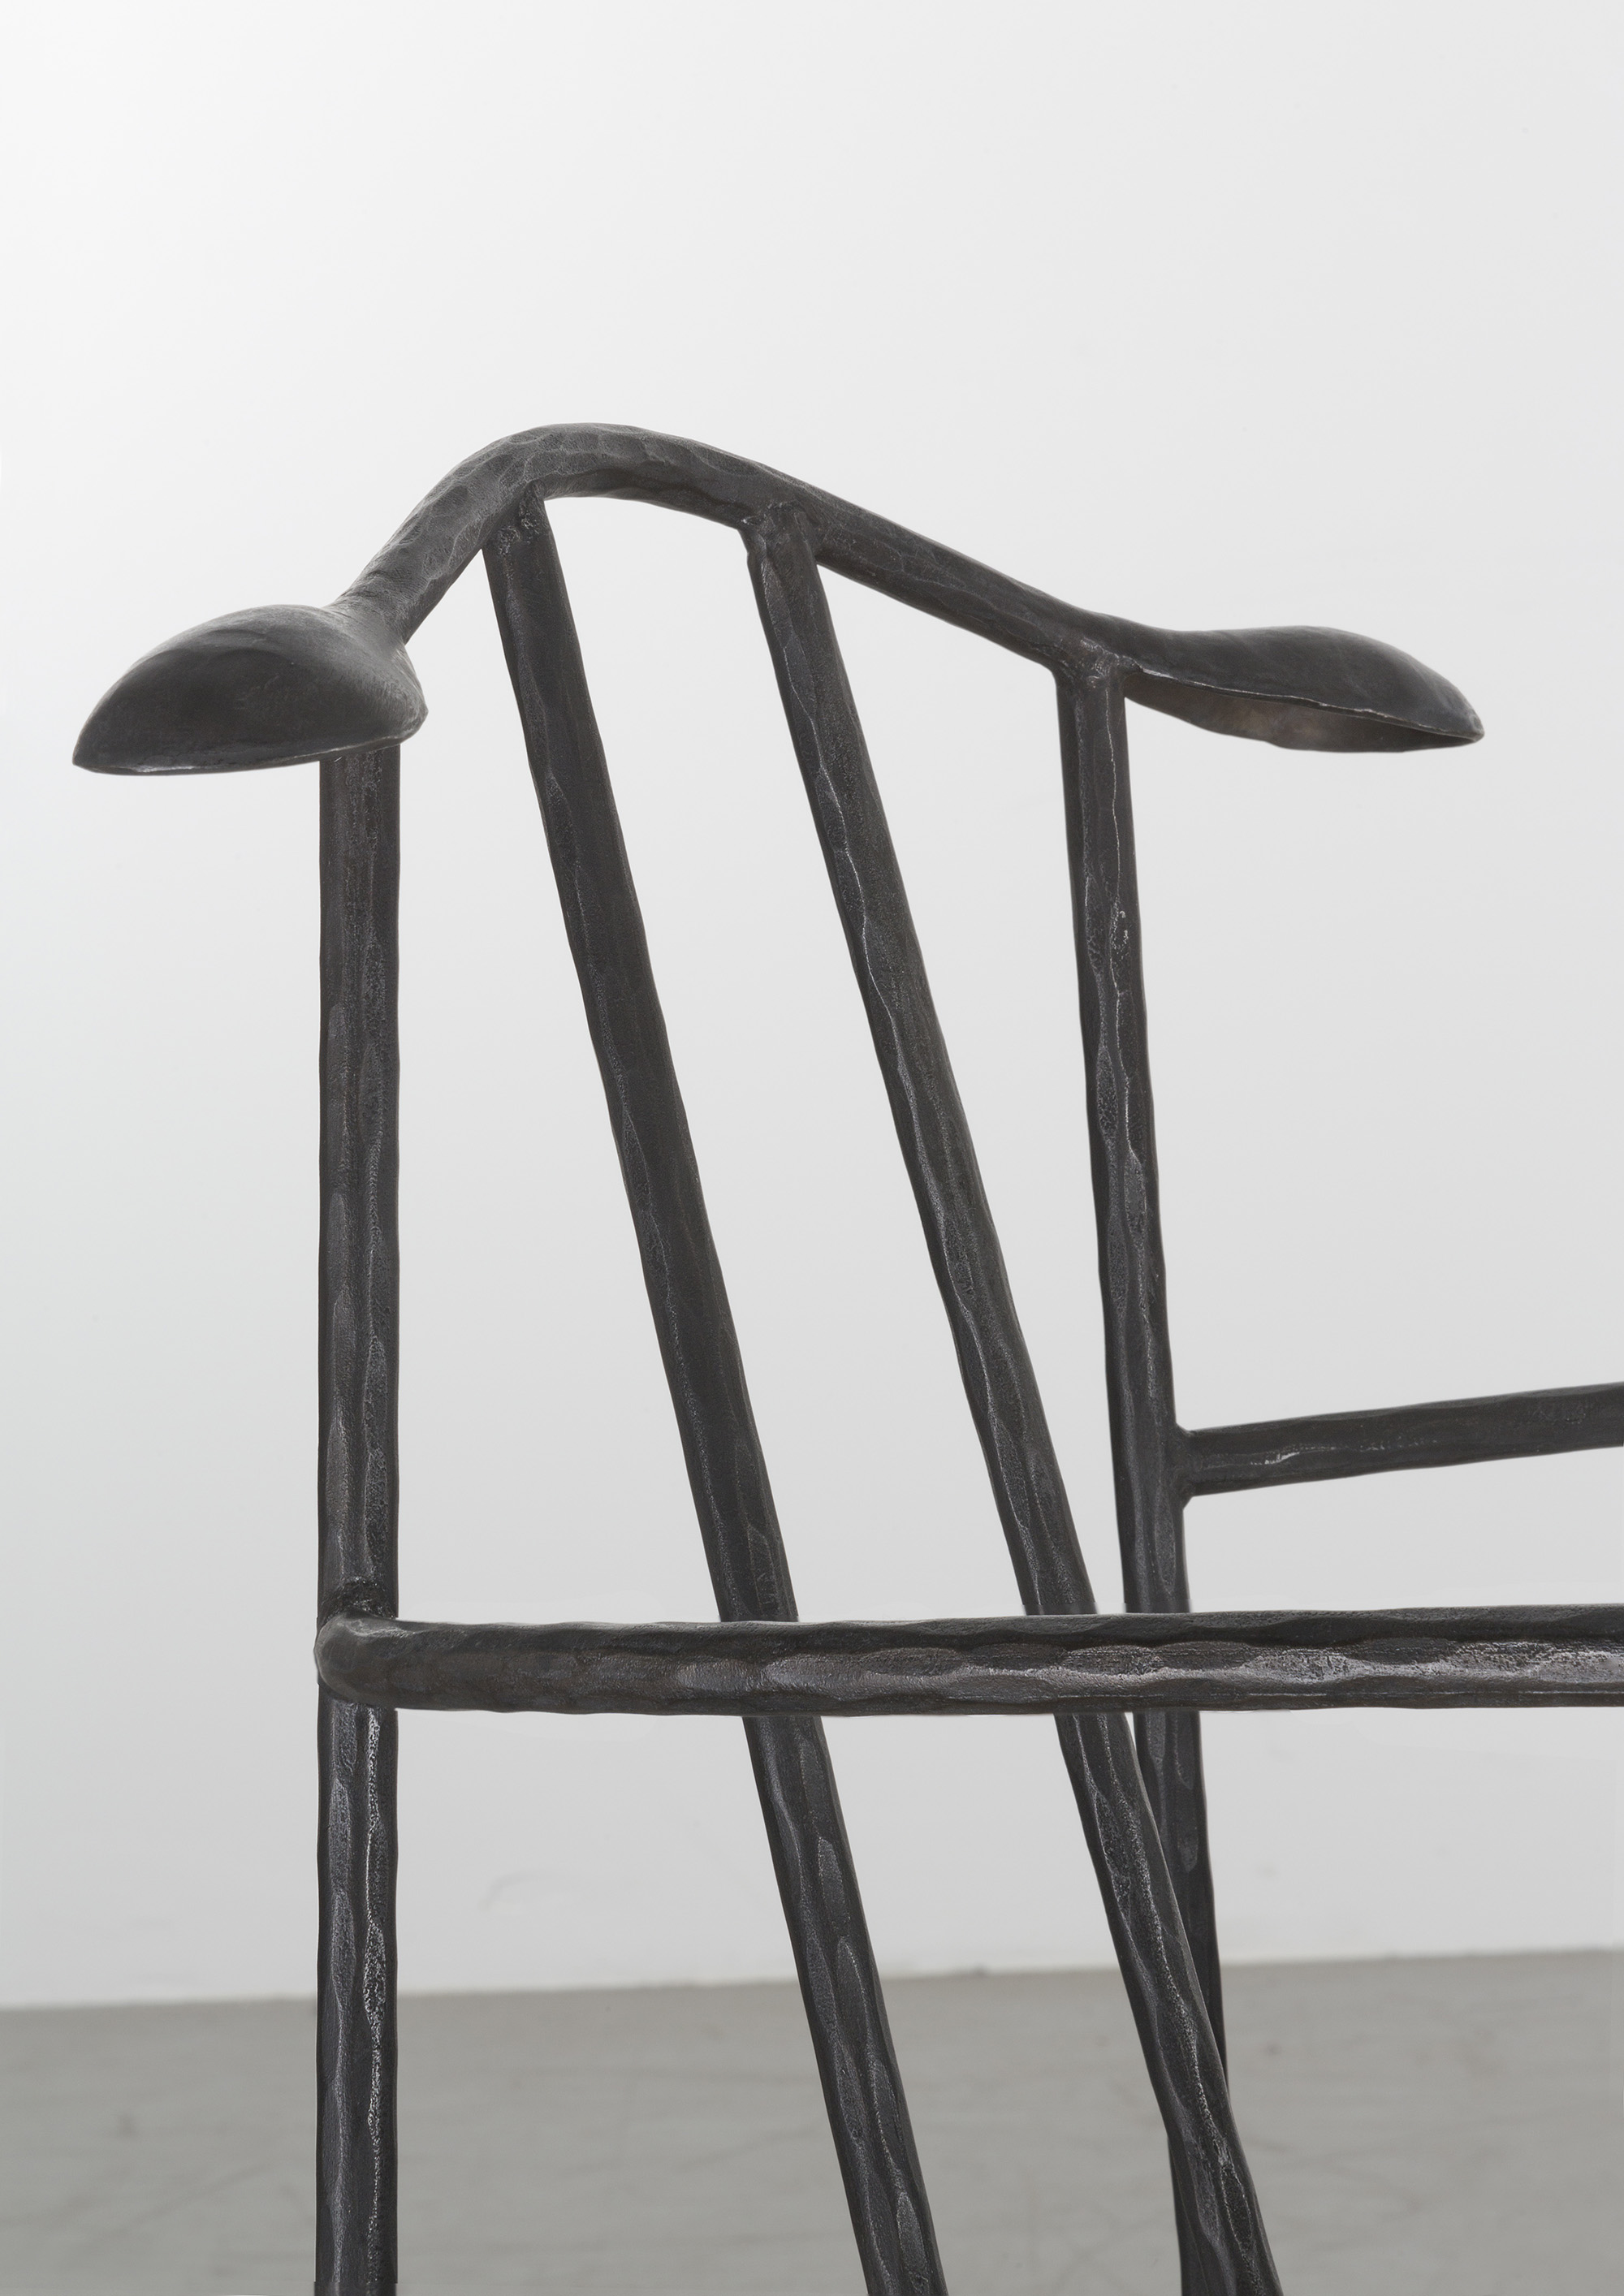 Hanger Chair